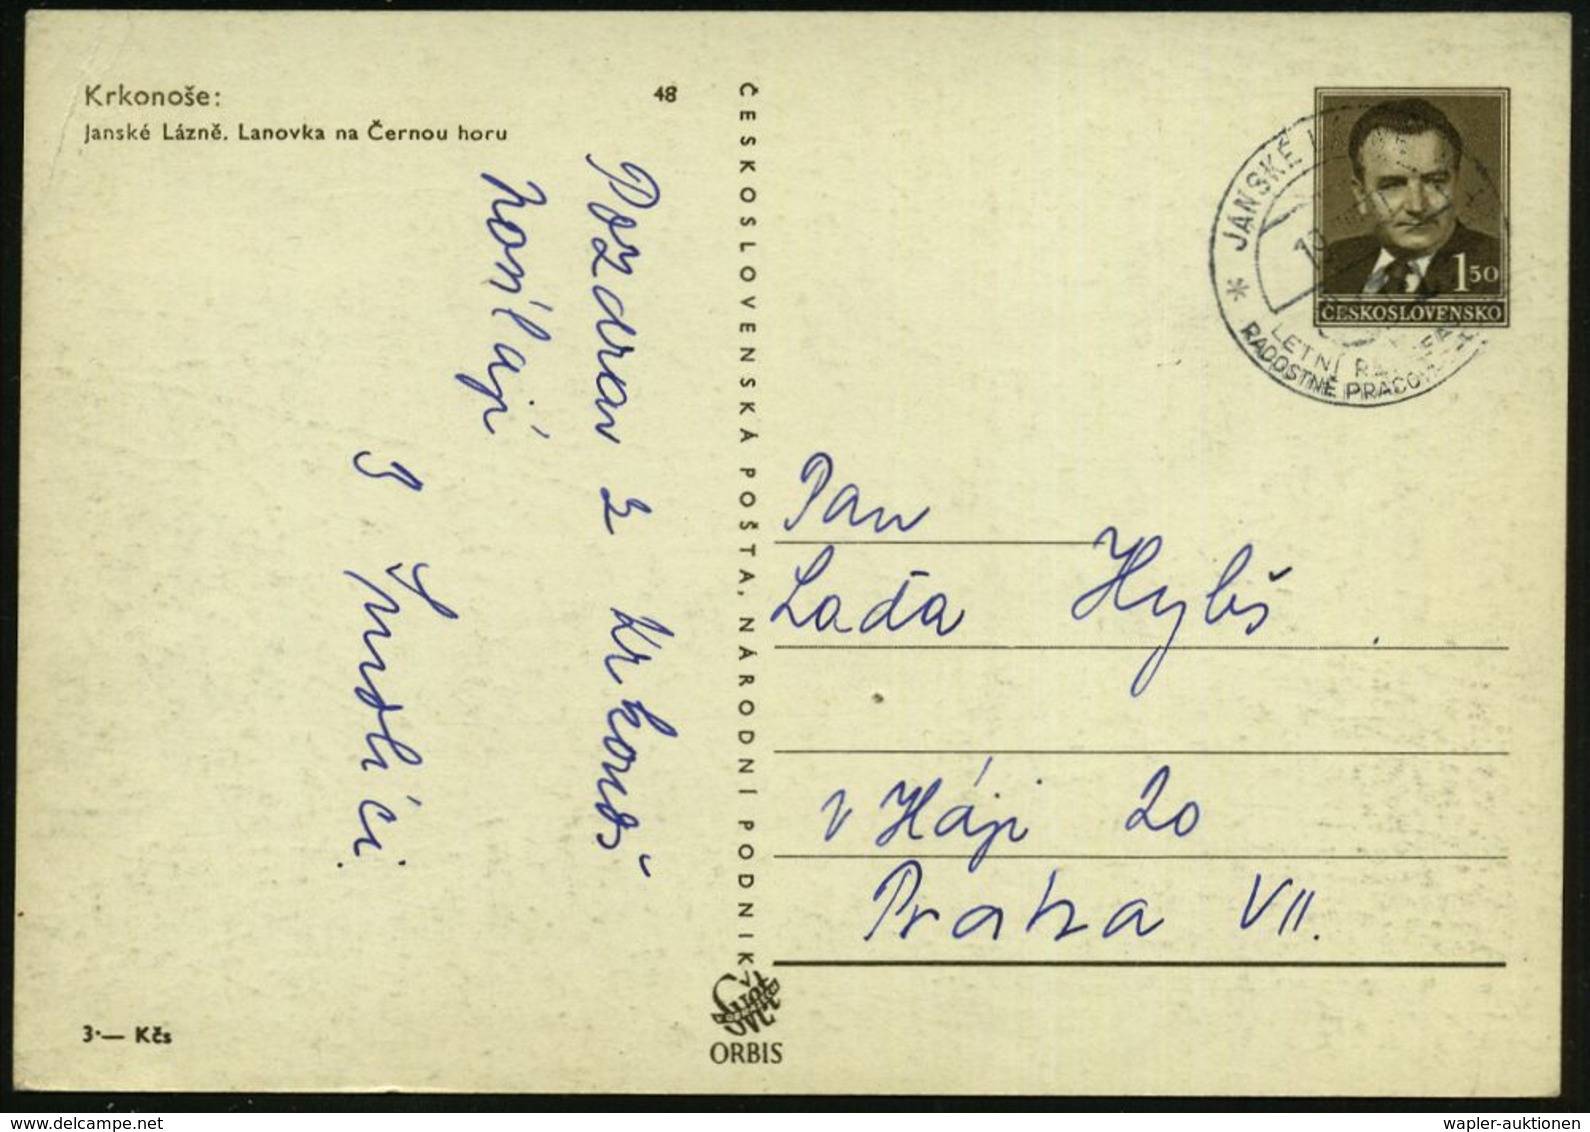 TSCHECHOSLOWAKEI 1950 (19.8.) 1,50 Kc. BiP Gottwald, Braun: Gondel-Seilbahn Krkonose Im Winter (Janske Lazne) Ortsgl. St - Eisenbahnen